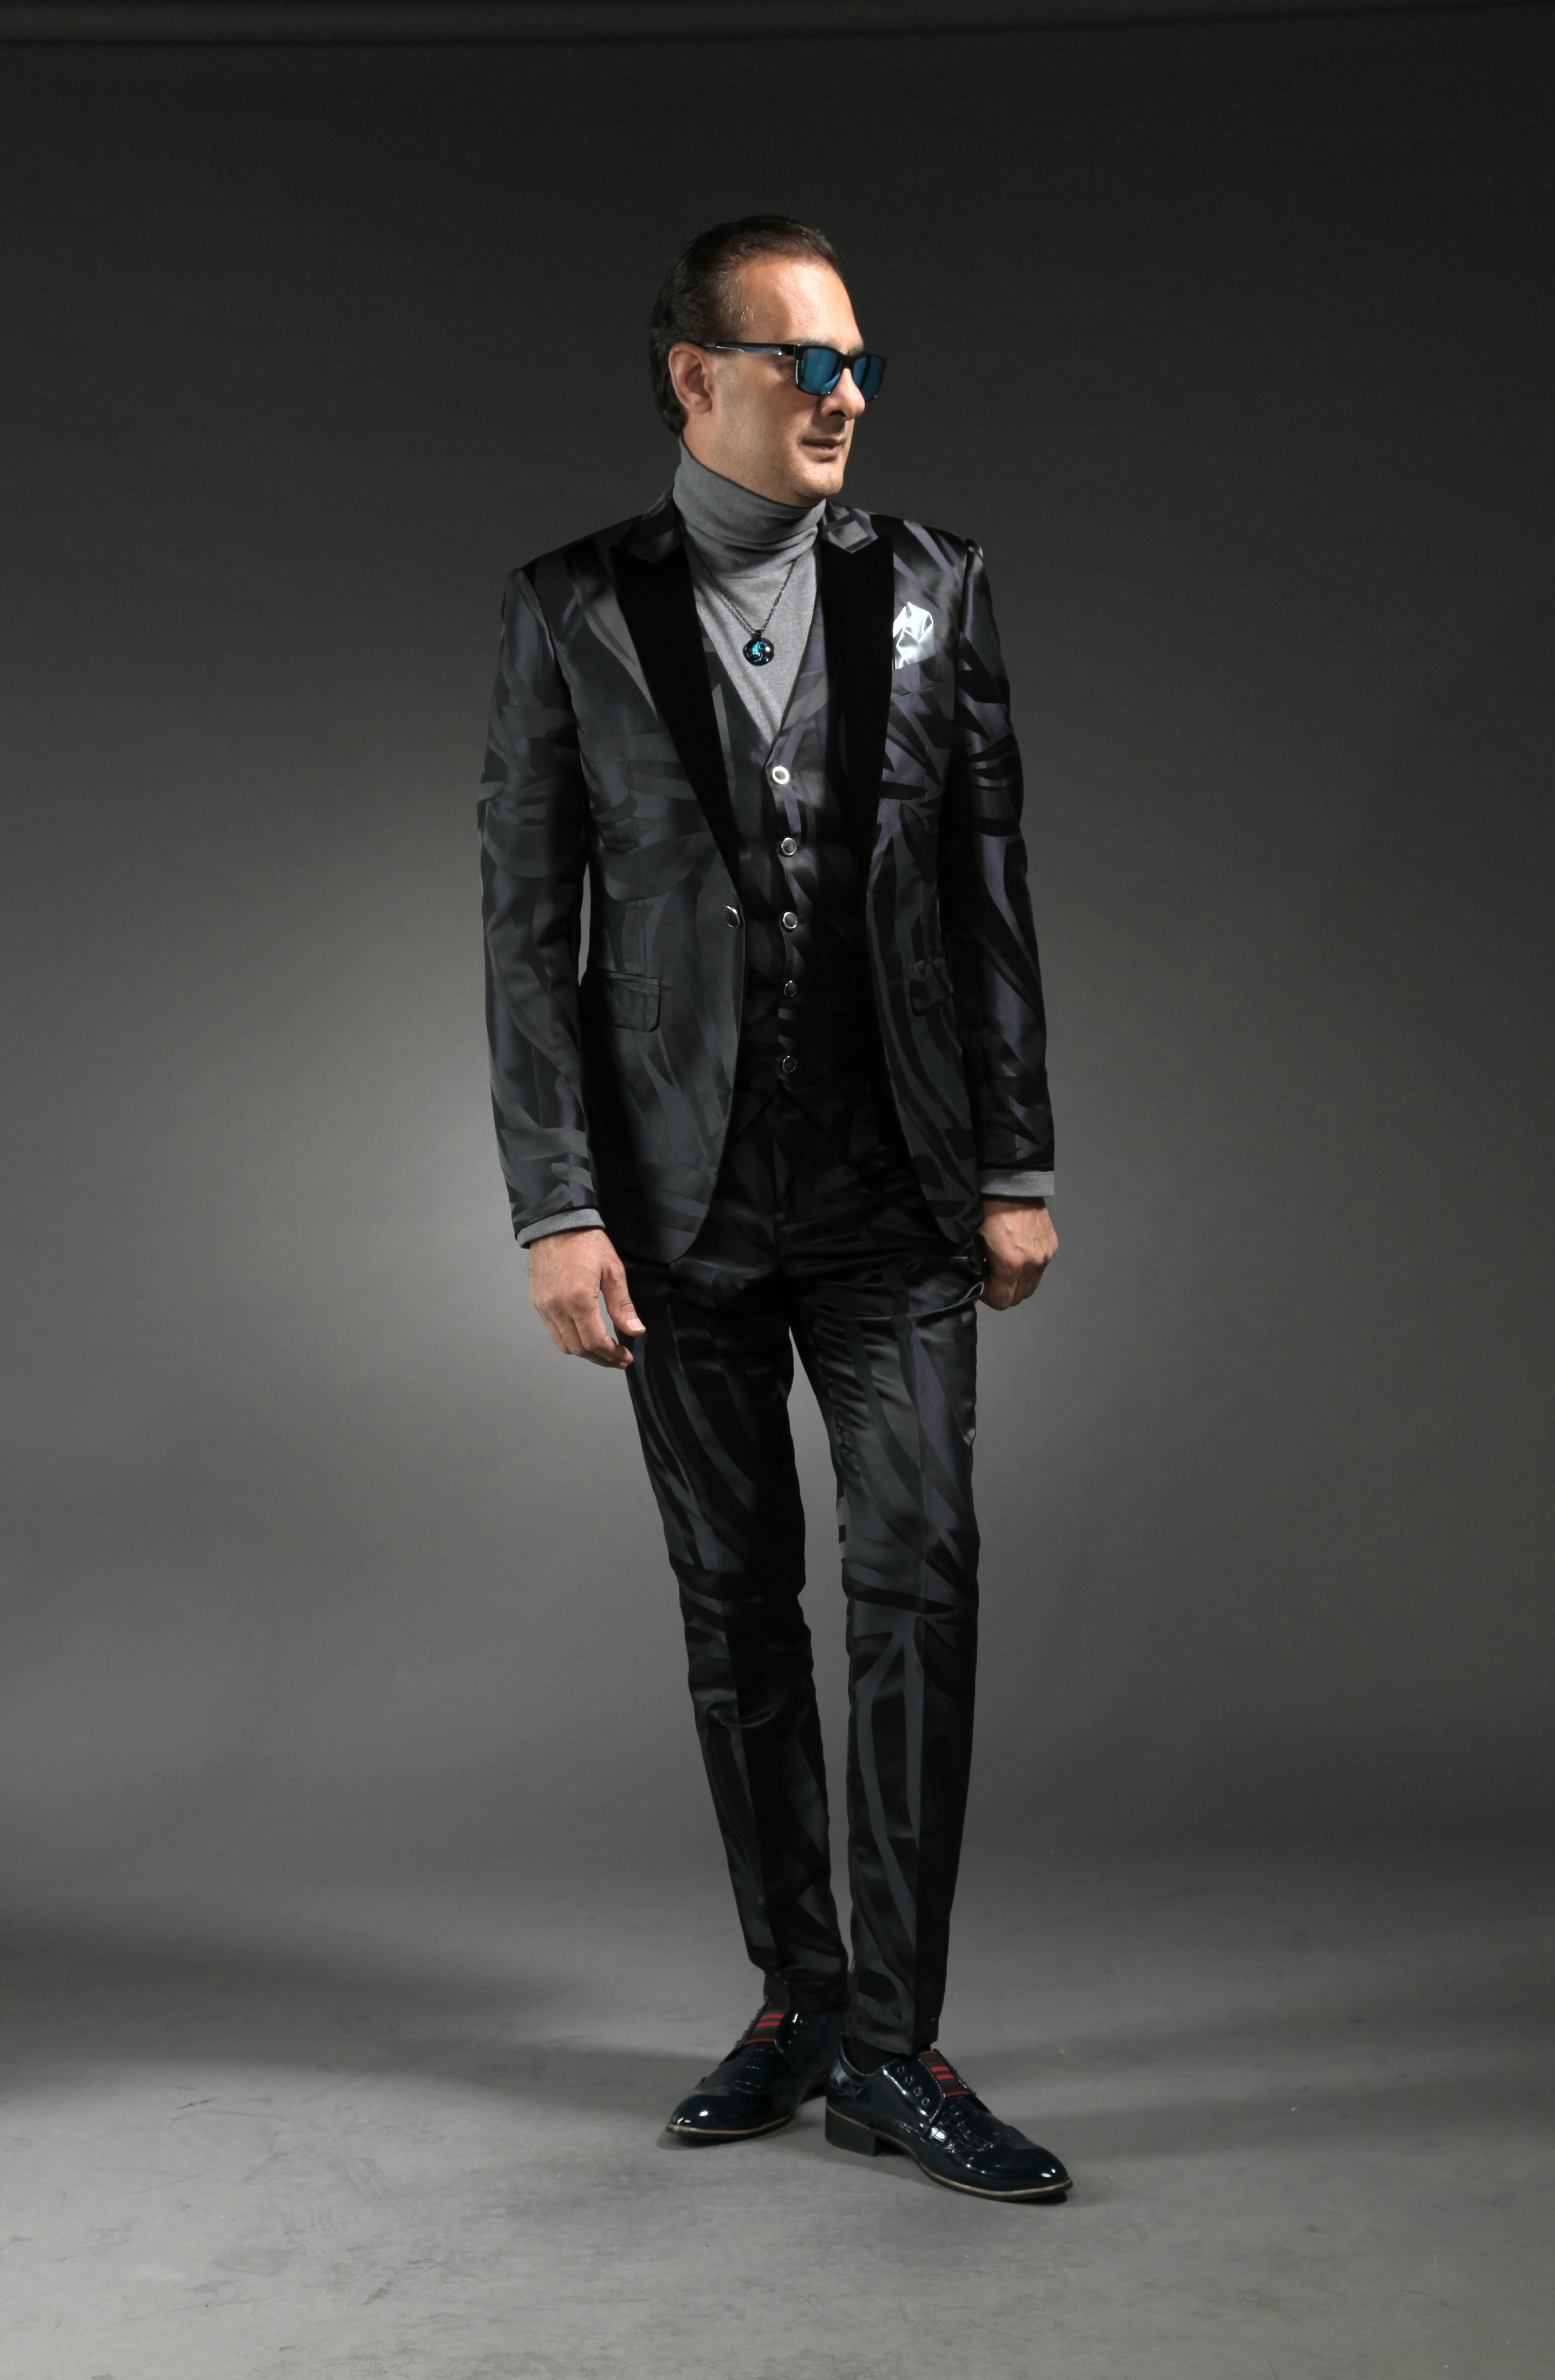 Mst 5010 02 Rent Rental Hire Tuxedo Suit Black Tie Suit Designer Suits Shop Tailor Tailors Singapore Wedding